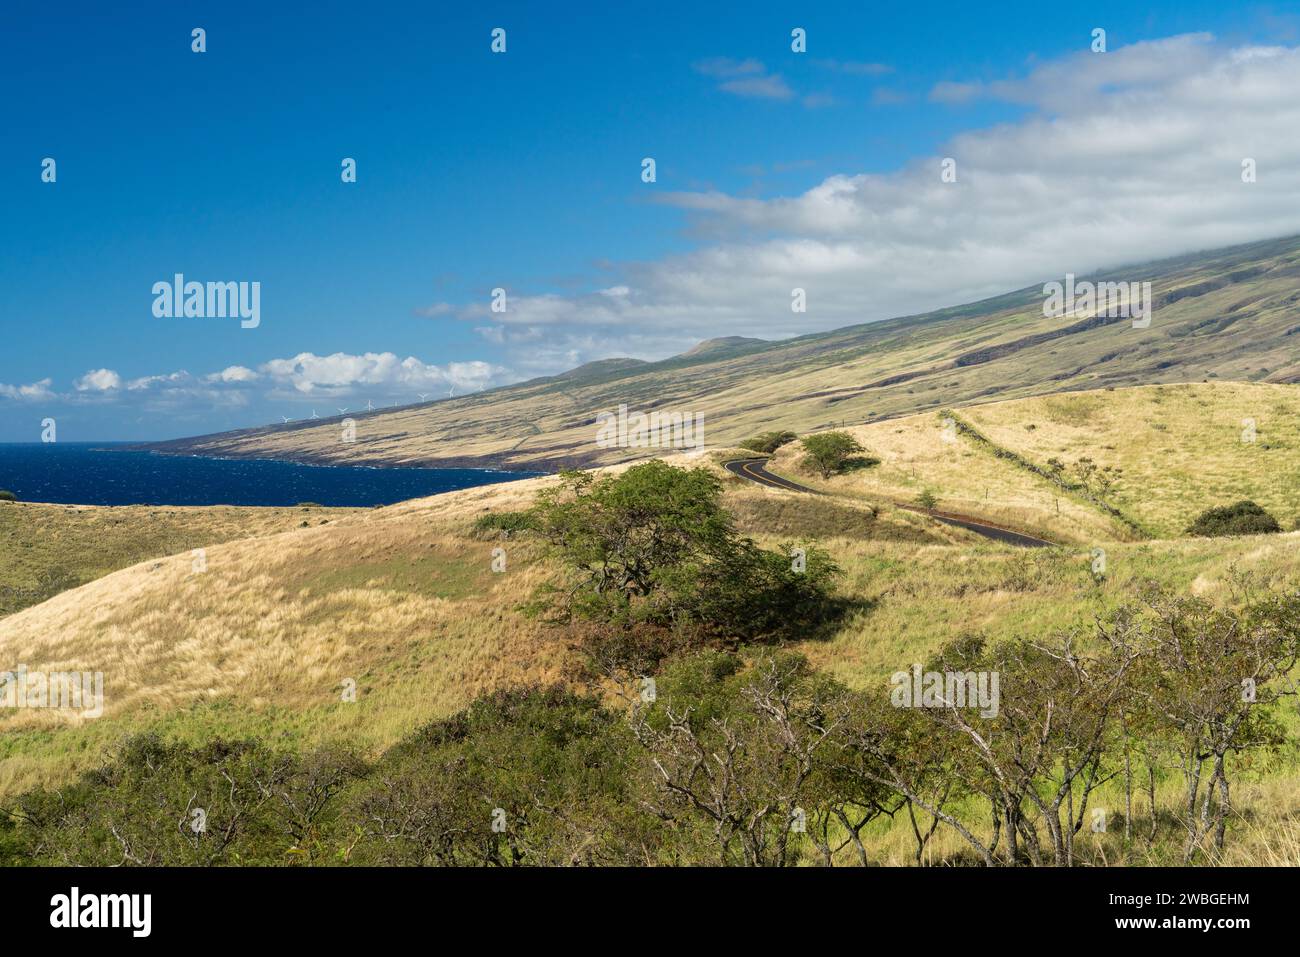 Le ampie vedute della costa di Maui e delle colline erbose offrono una perfetta miscela di tranquillità e avventura. Foto Stock